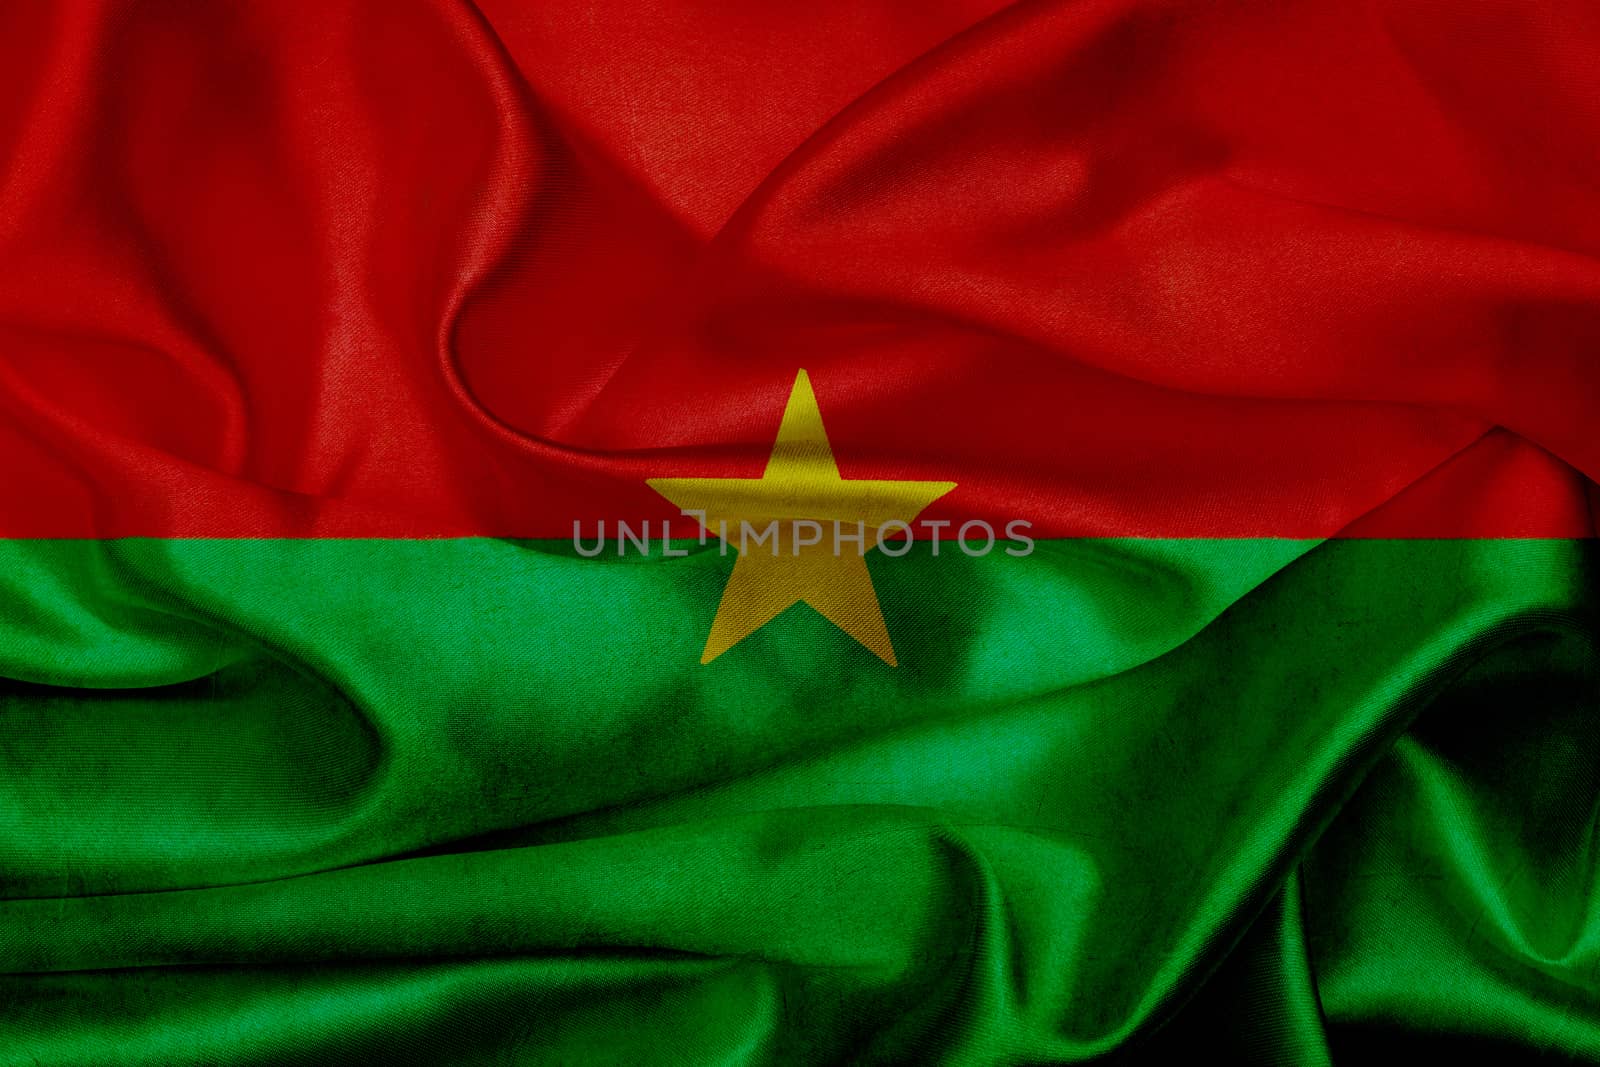 Burkina Faso grunge waving flag by taesmileland